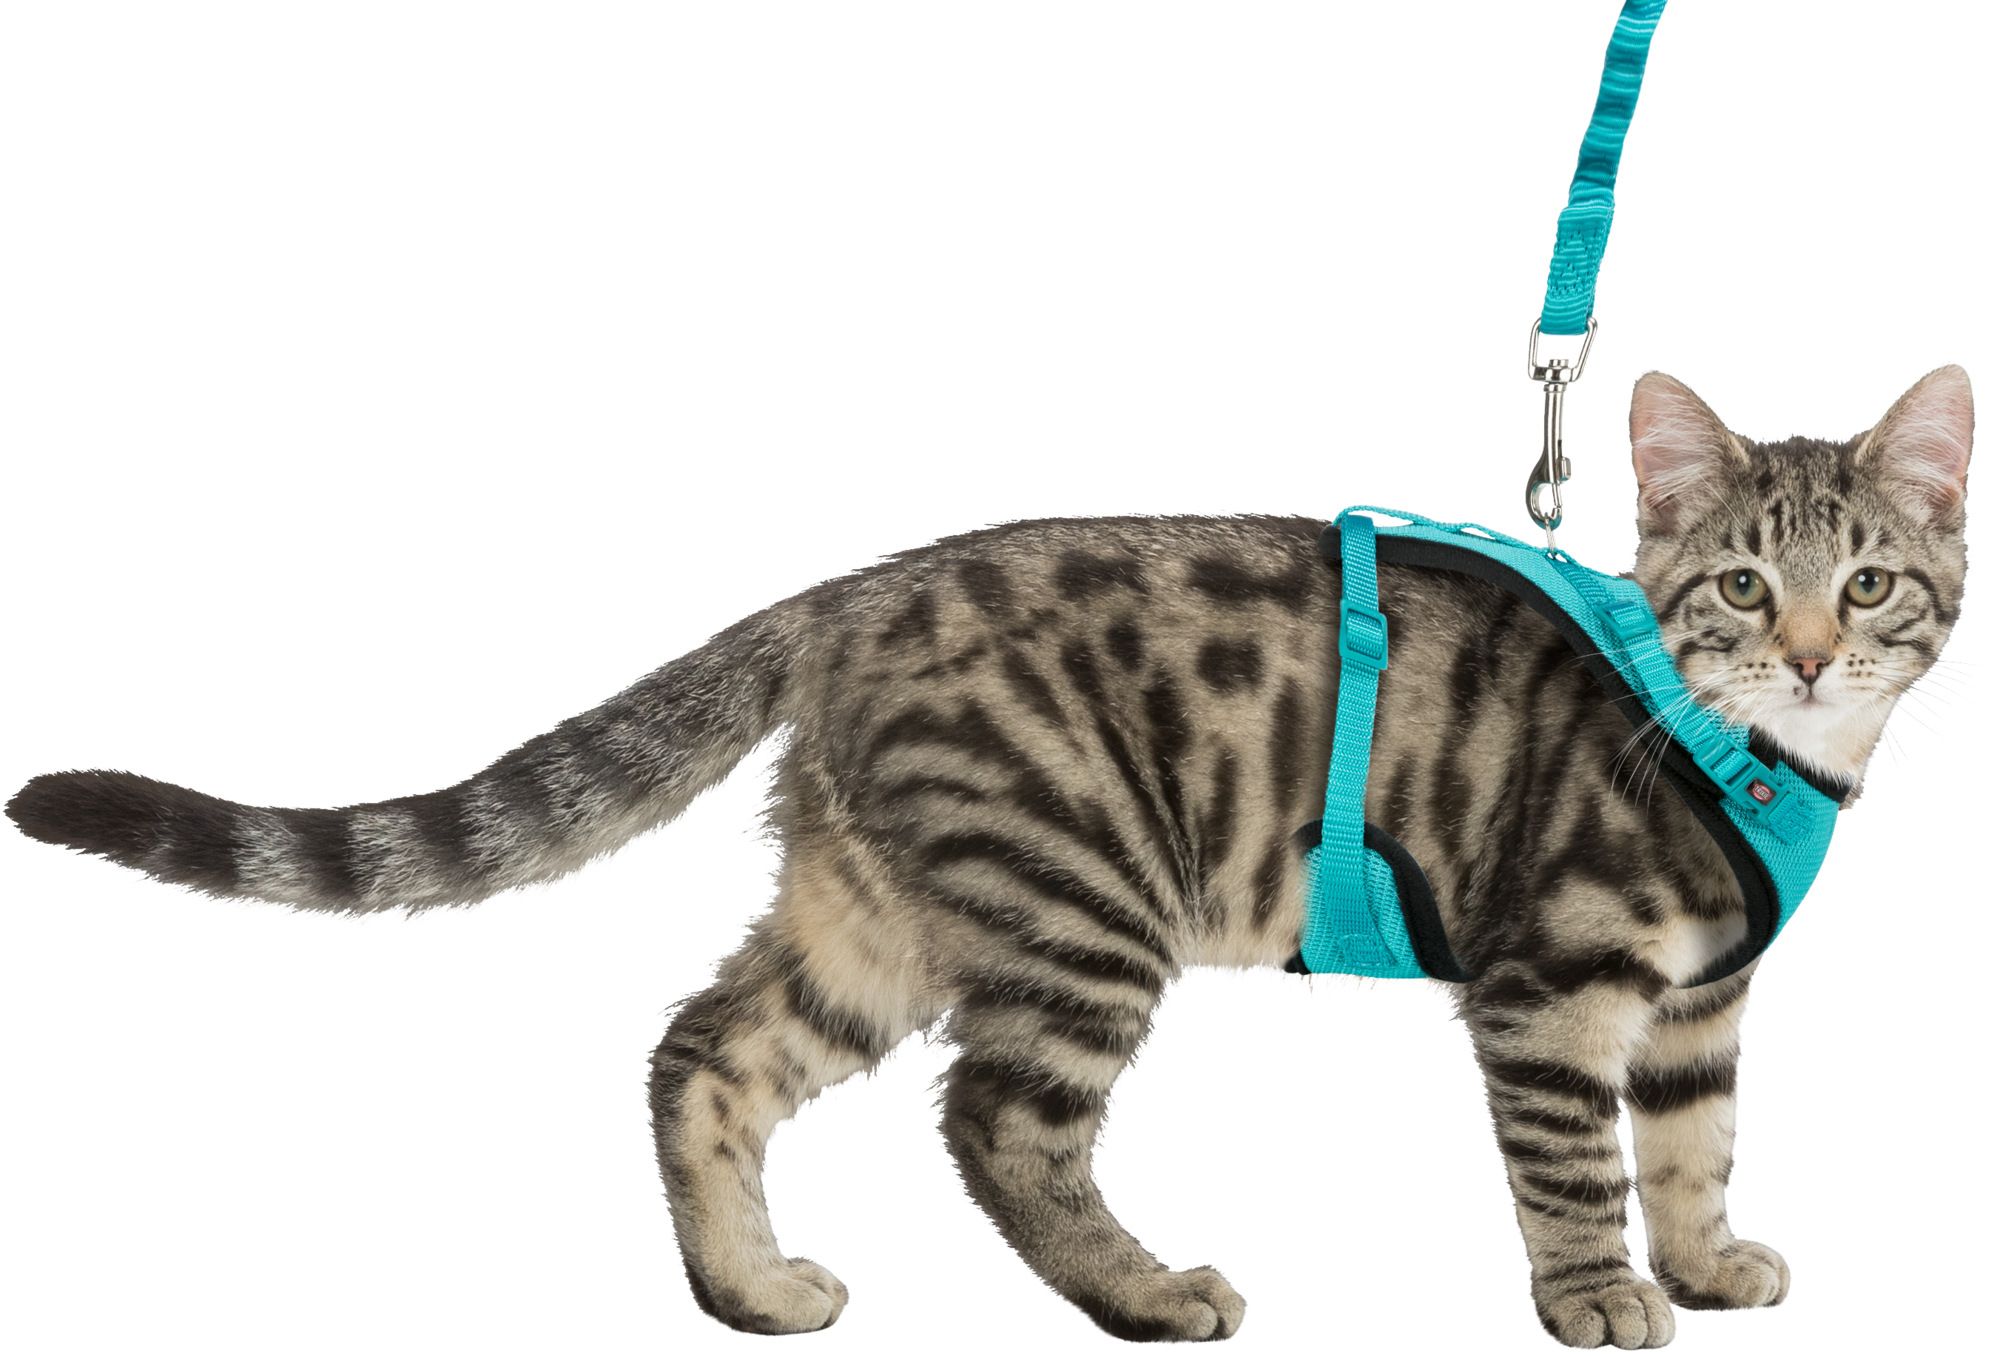 Шлейка с поводком, для кошки заказать онлайн, опт и розница. TRIXIE,  FLAMINGO, FLEXI — официальный поставщик в России